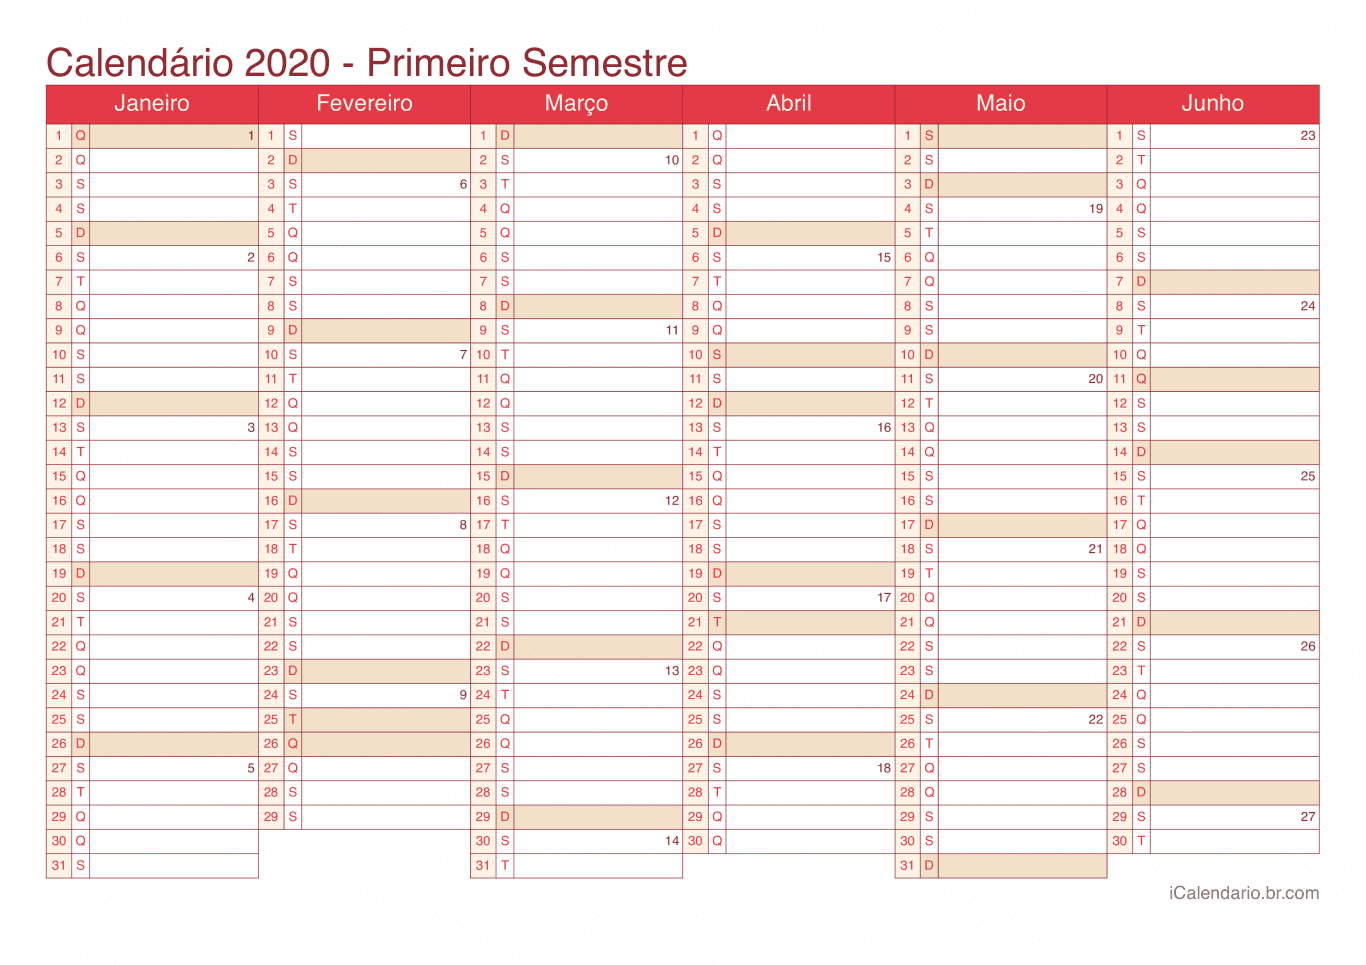 Calendário por semestre com números da semana 2020 - Cherry